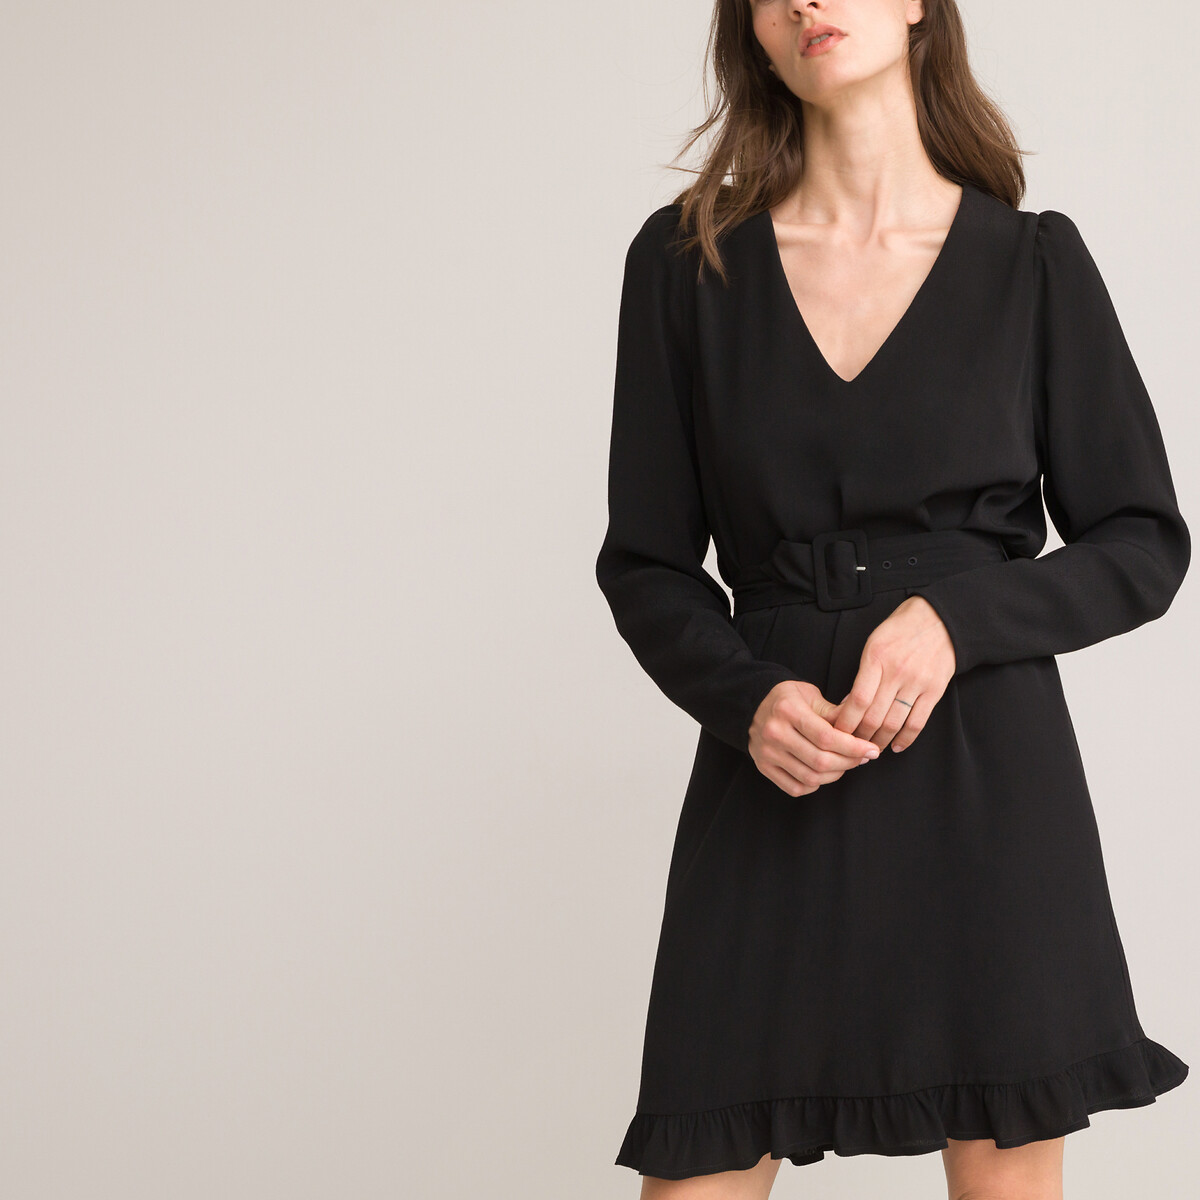 Платье расклешенное короткое с длинными рукавами 54 черный платье расклешенное короткое с длинными рукавами 54 черный